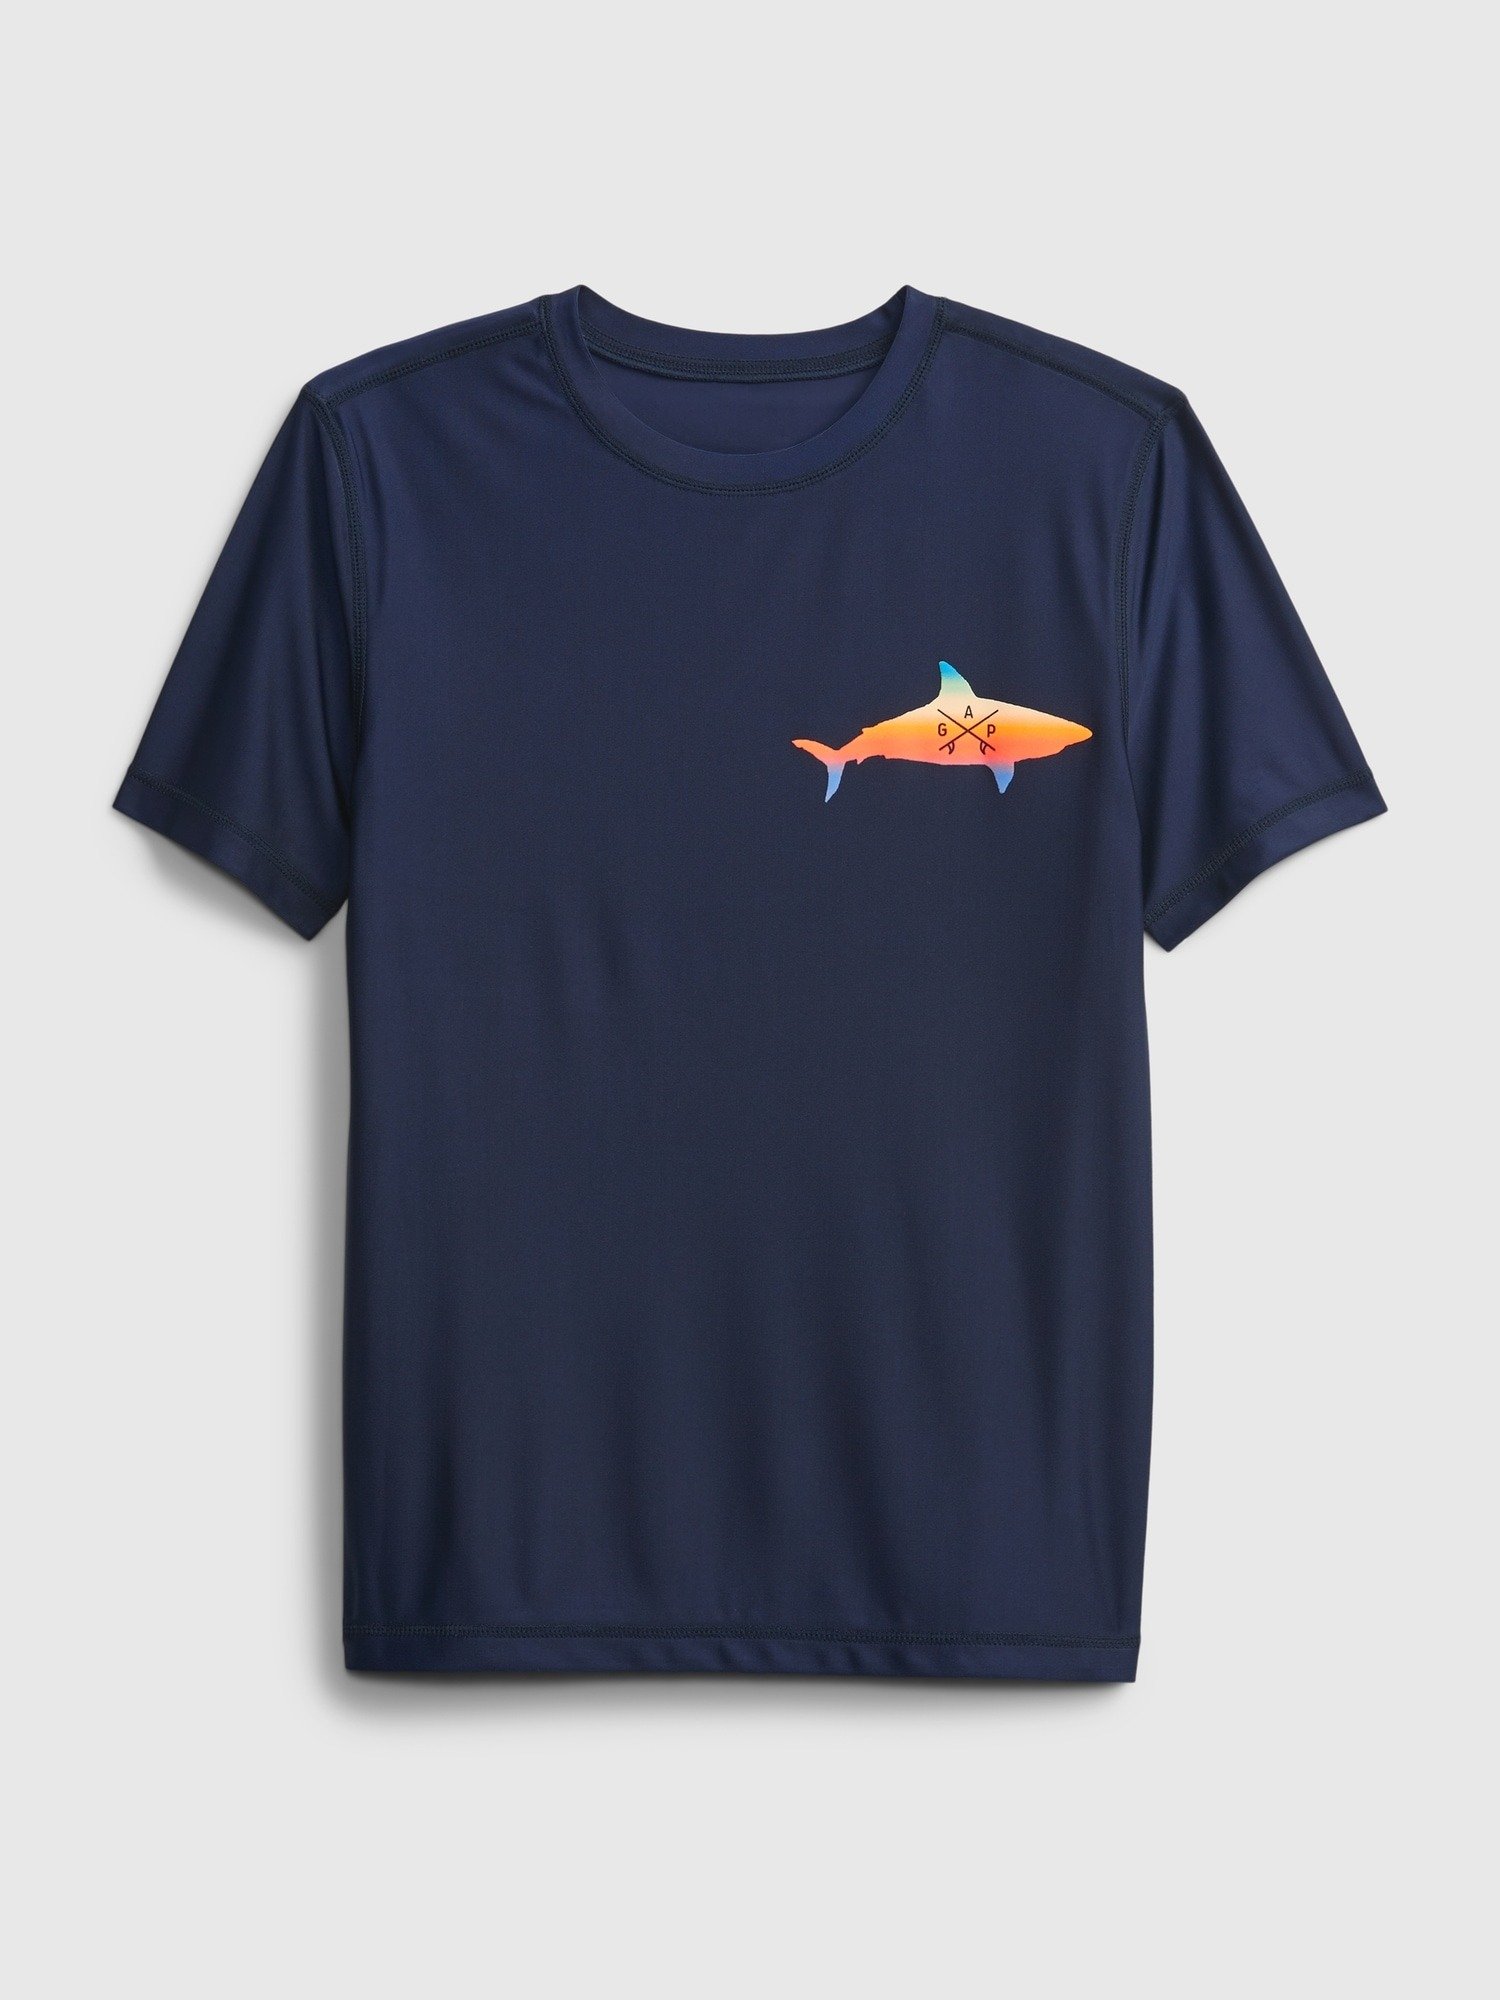 Balık Baskılı T-Shirt product image